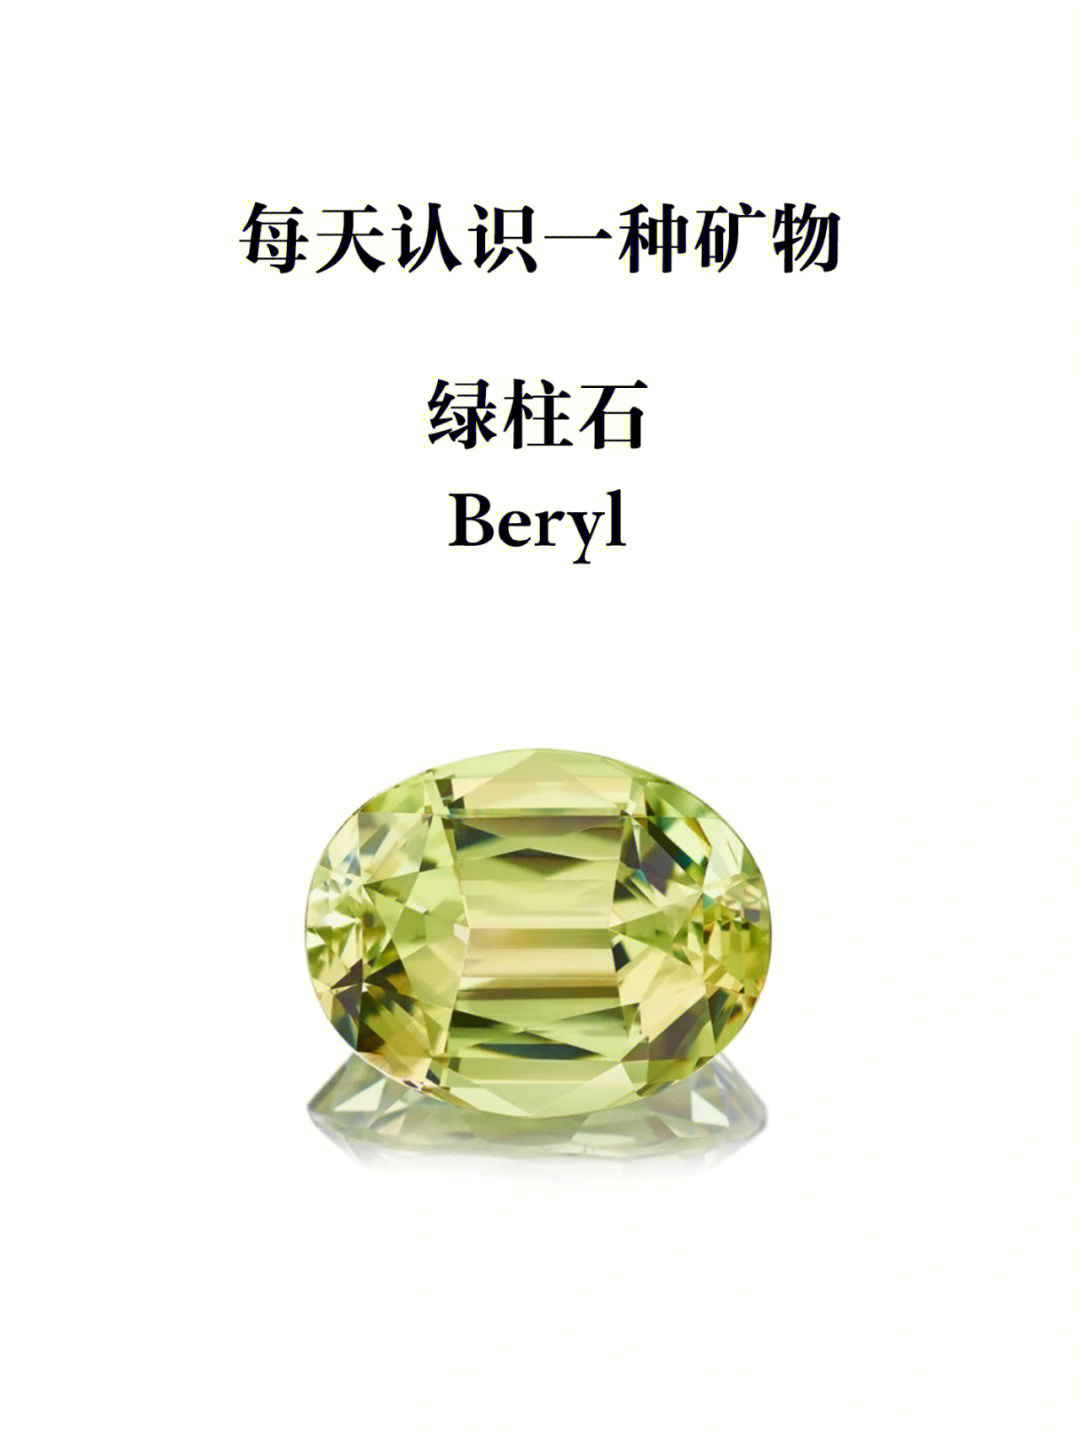 绿柱石 berylite六方晶系晶体呈柱状不完全解理主要产于花岗伟晶岩,云